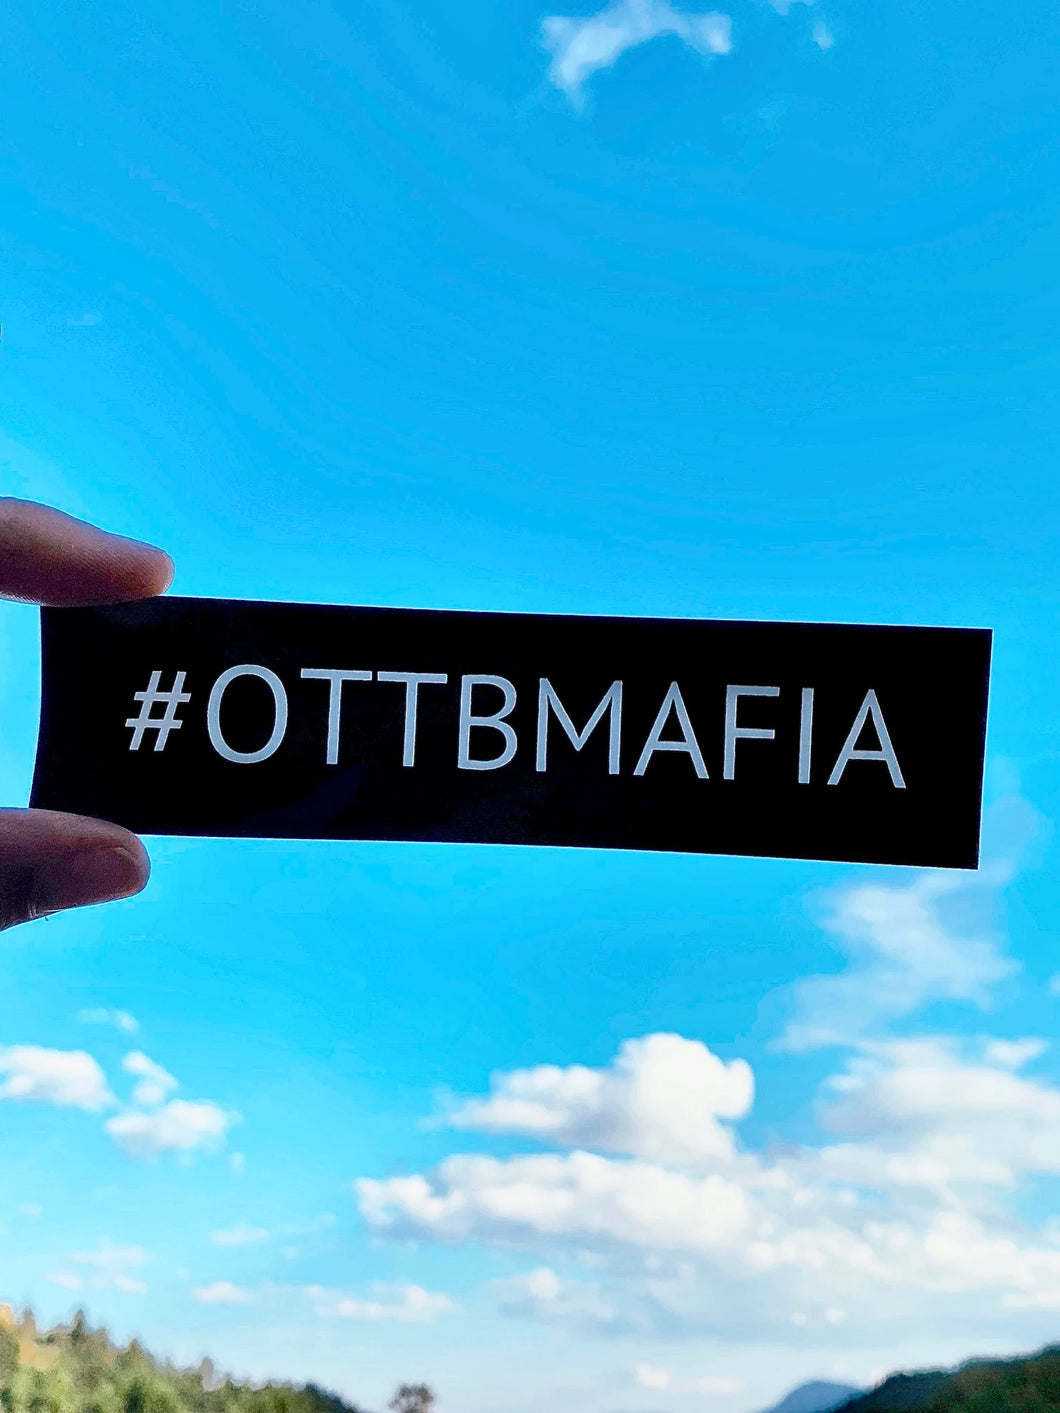 Black and White #OTTBMAFIA Sticker